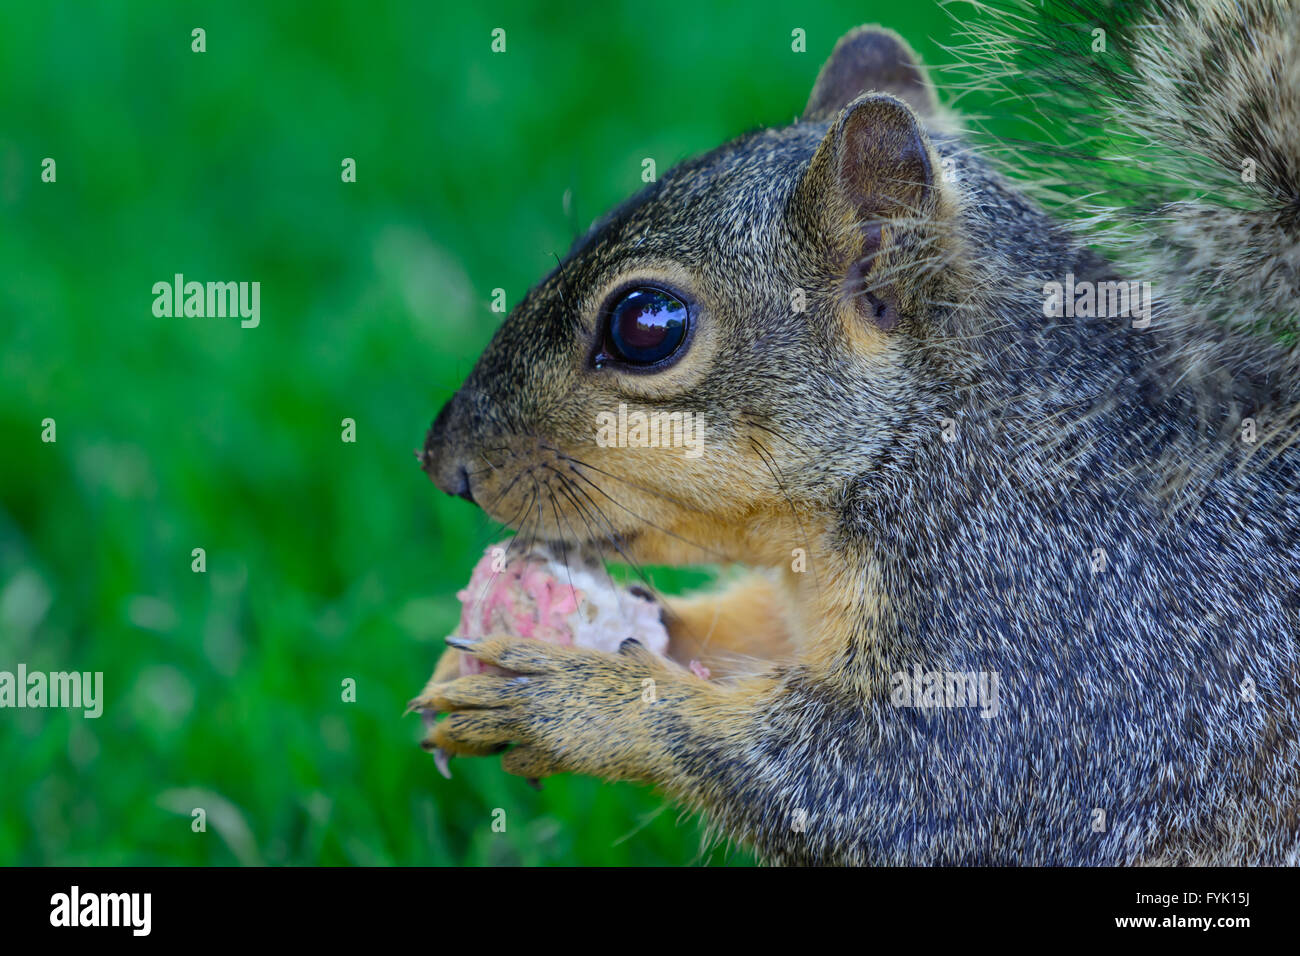 Nahaufnahme von Eichhörnchen hält einen Rettich Seitenprofil detaillierte Gesicht Ohren Pfoten Augen. Selektiven Fokus vorwärts Stockfoto